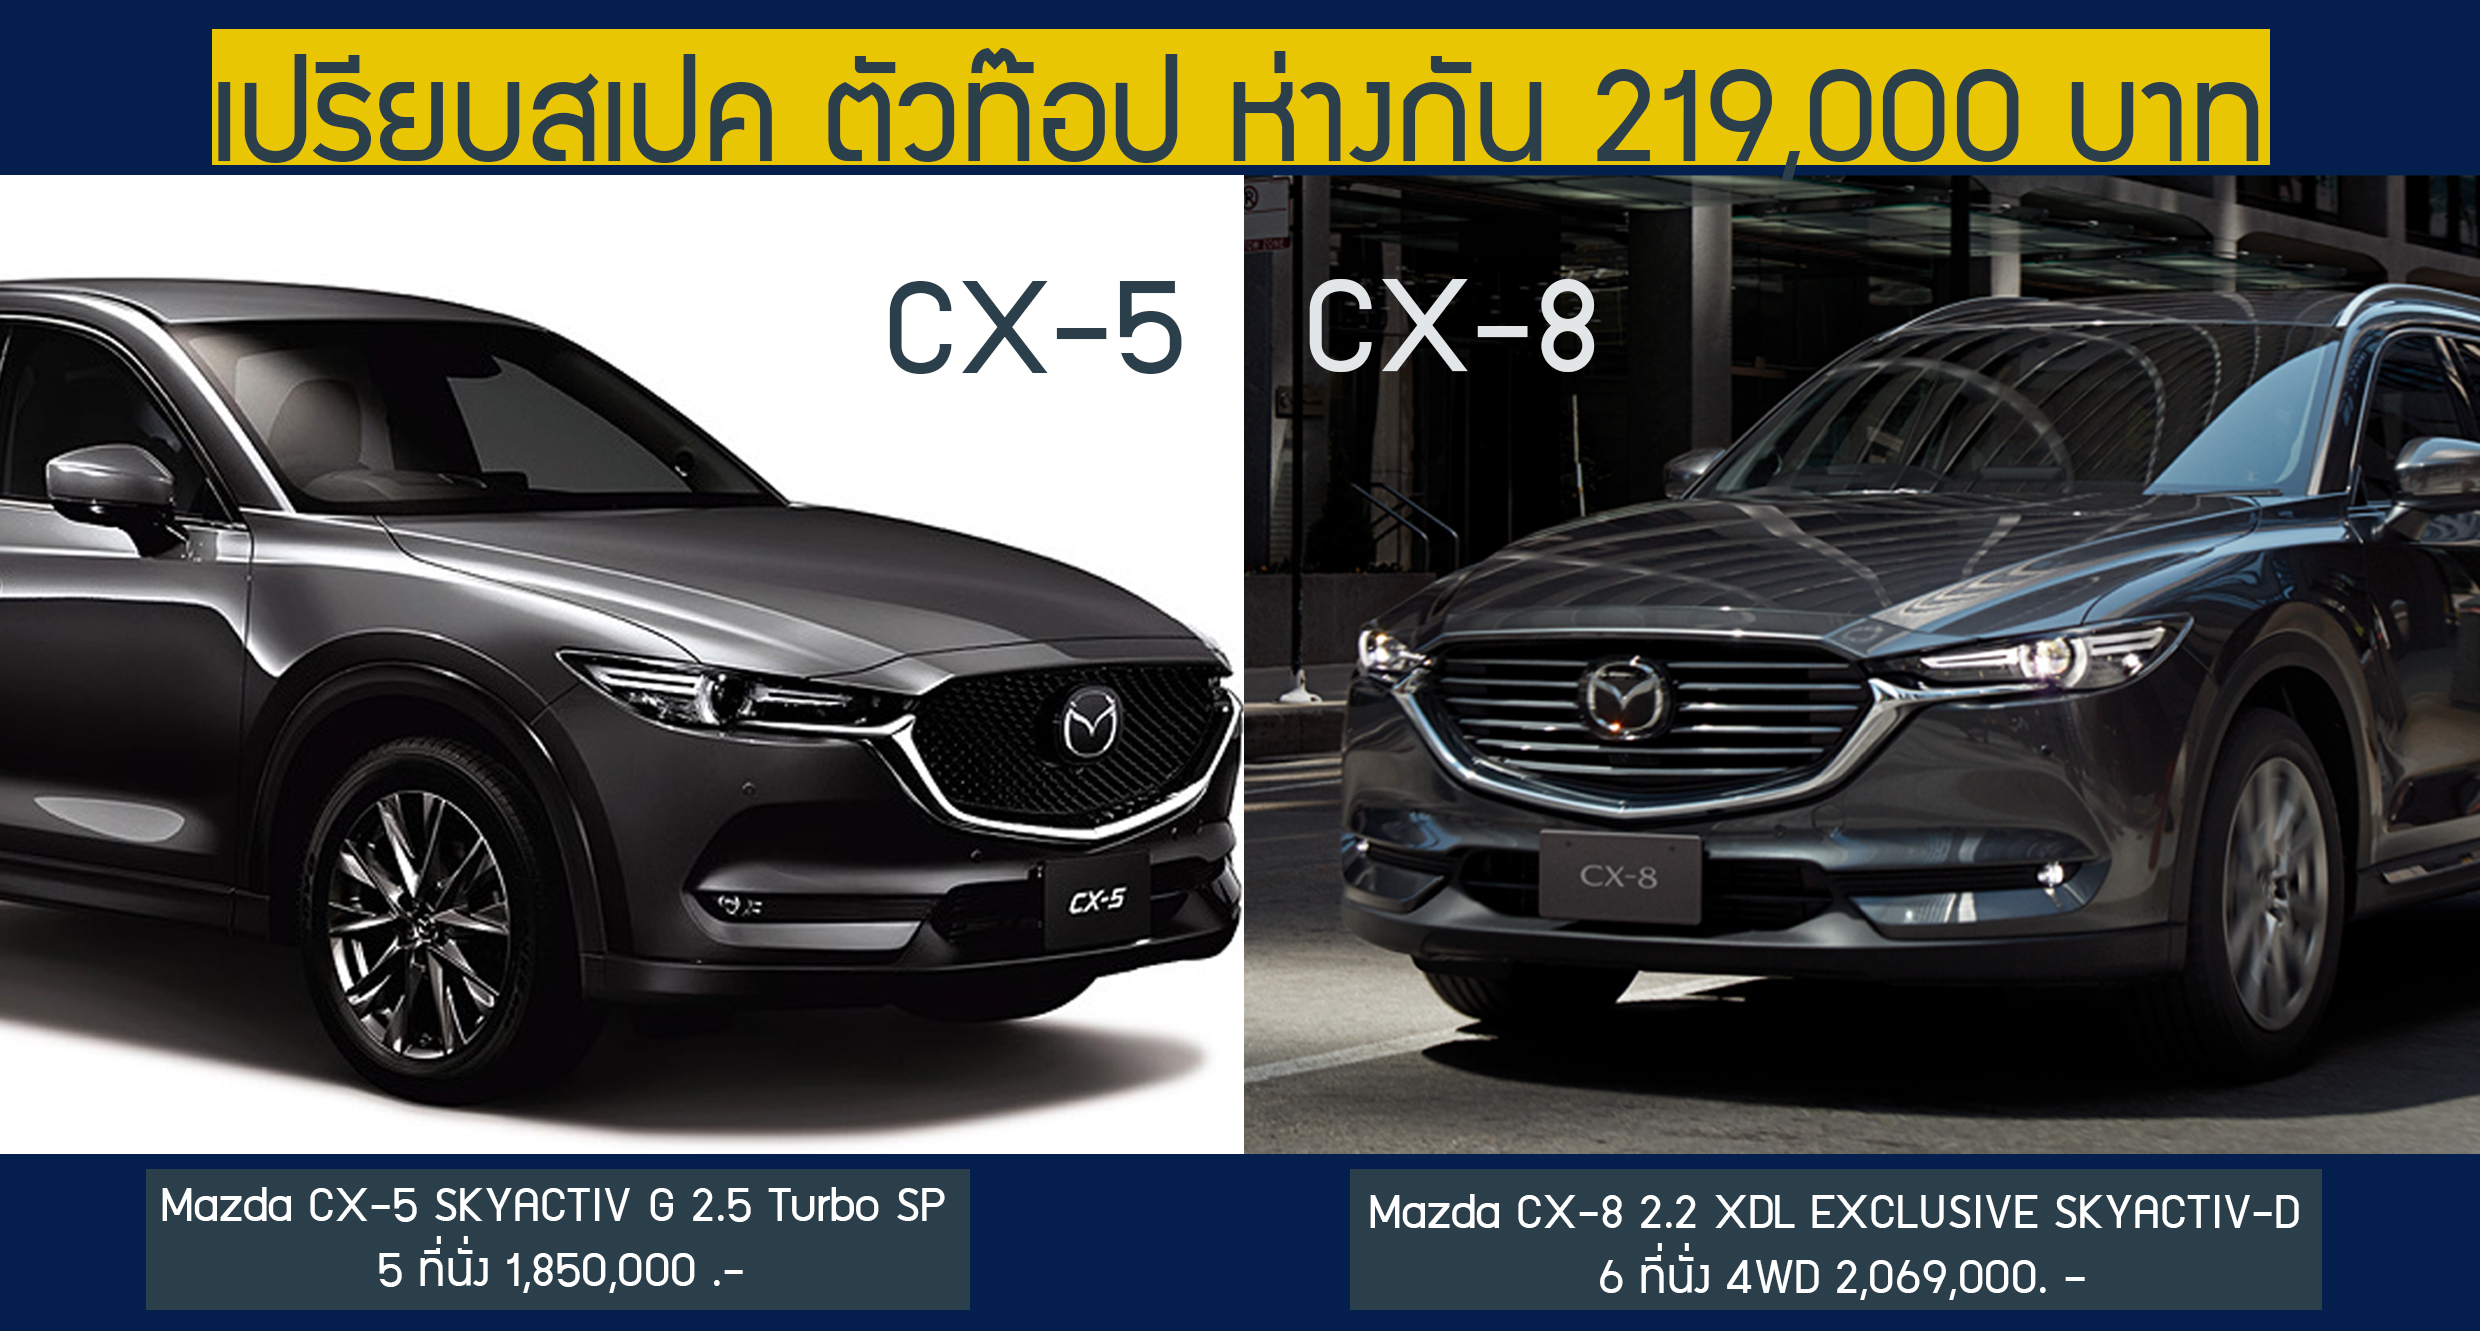 เทียบสเปค! รุ่นท๊อป Mazda CX-5 และ CX-8 ราคาต่าง 219,000 บาท